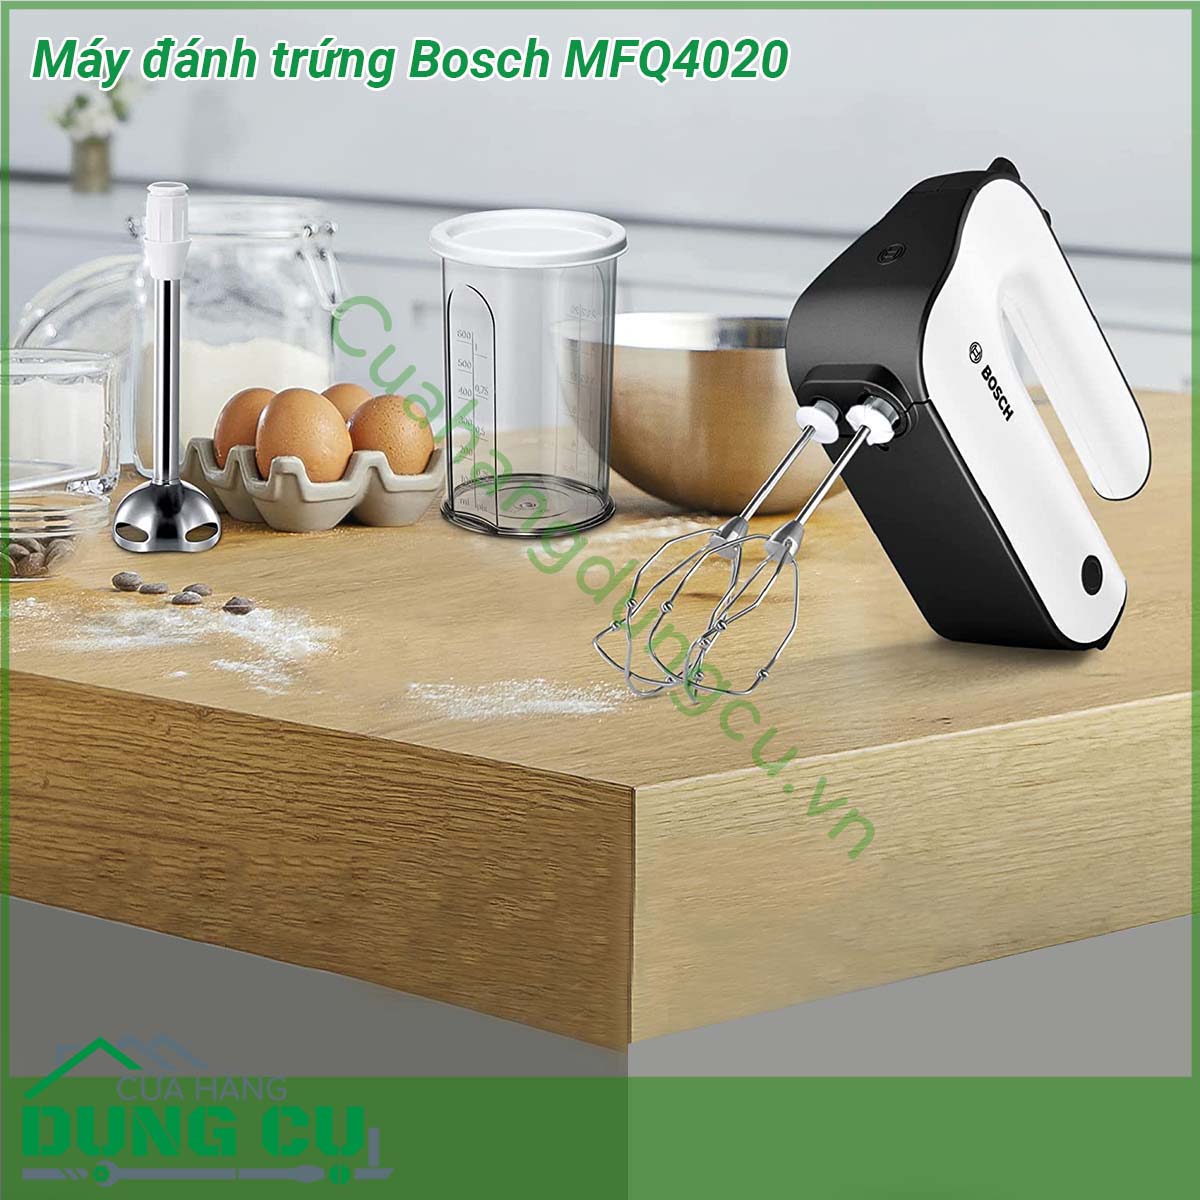 Máy đánh trứng Bosch MFQ4020 có thiết kế gọn nhẹ trang nhã dễ sử dụng hiệu quả lâu bền  hoạt động mạnh mẽ với công suất 450W cùng 5 tốc độ sẽ giúp bạn nhào trộn bột đánh kem đánh trứng và các loại thực phẩm một cách dễ dàng Máy được trang bị 2 bộ que đánh bằng thép không gỉ đảm bảo sức khỏe người dùng và dễ dàng thay thế khi cần thiết Với Máy đánh trứng Bosch MFQ4020 công việc bếp núc của bạn sẽ trở nên nhanh chóng và tiện lợi hơn